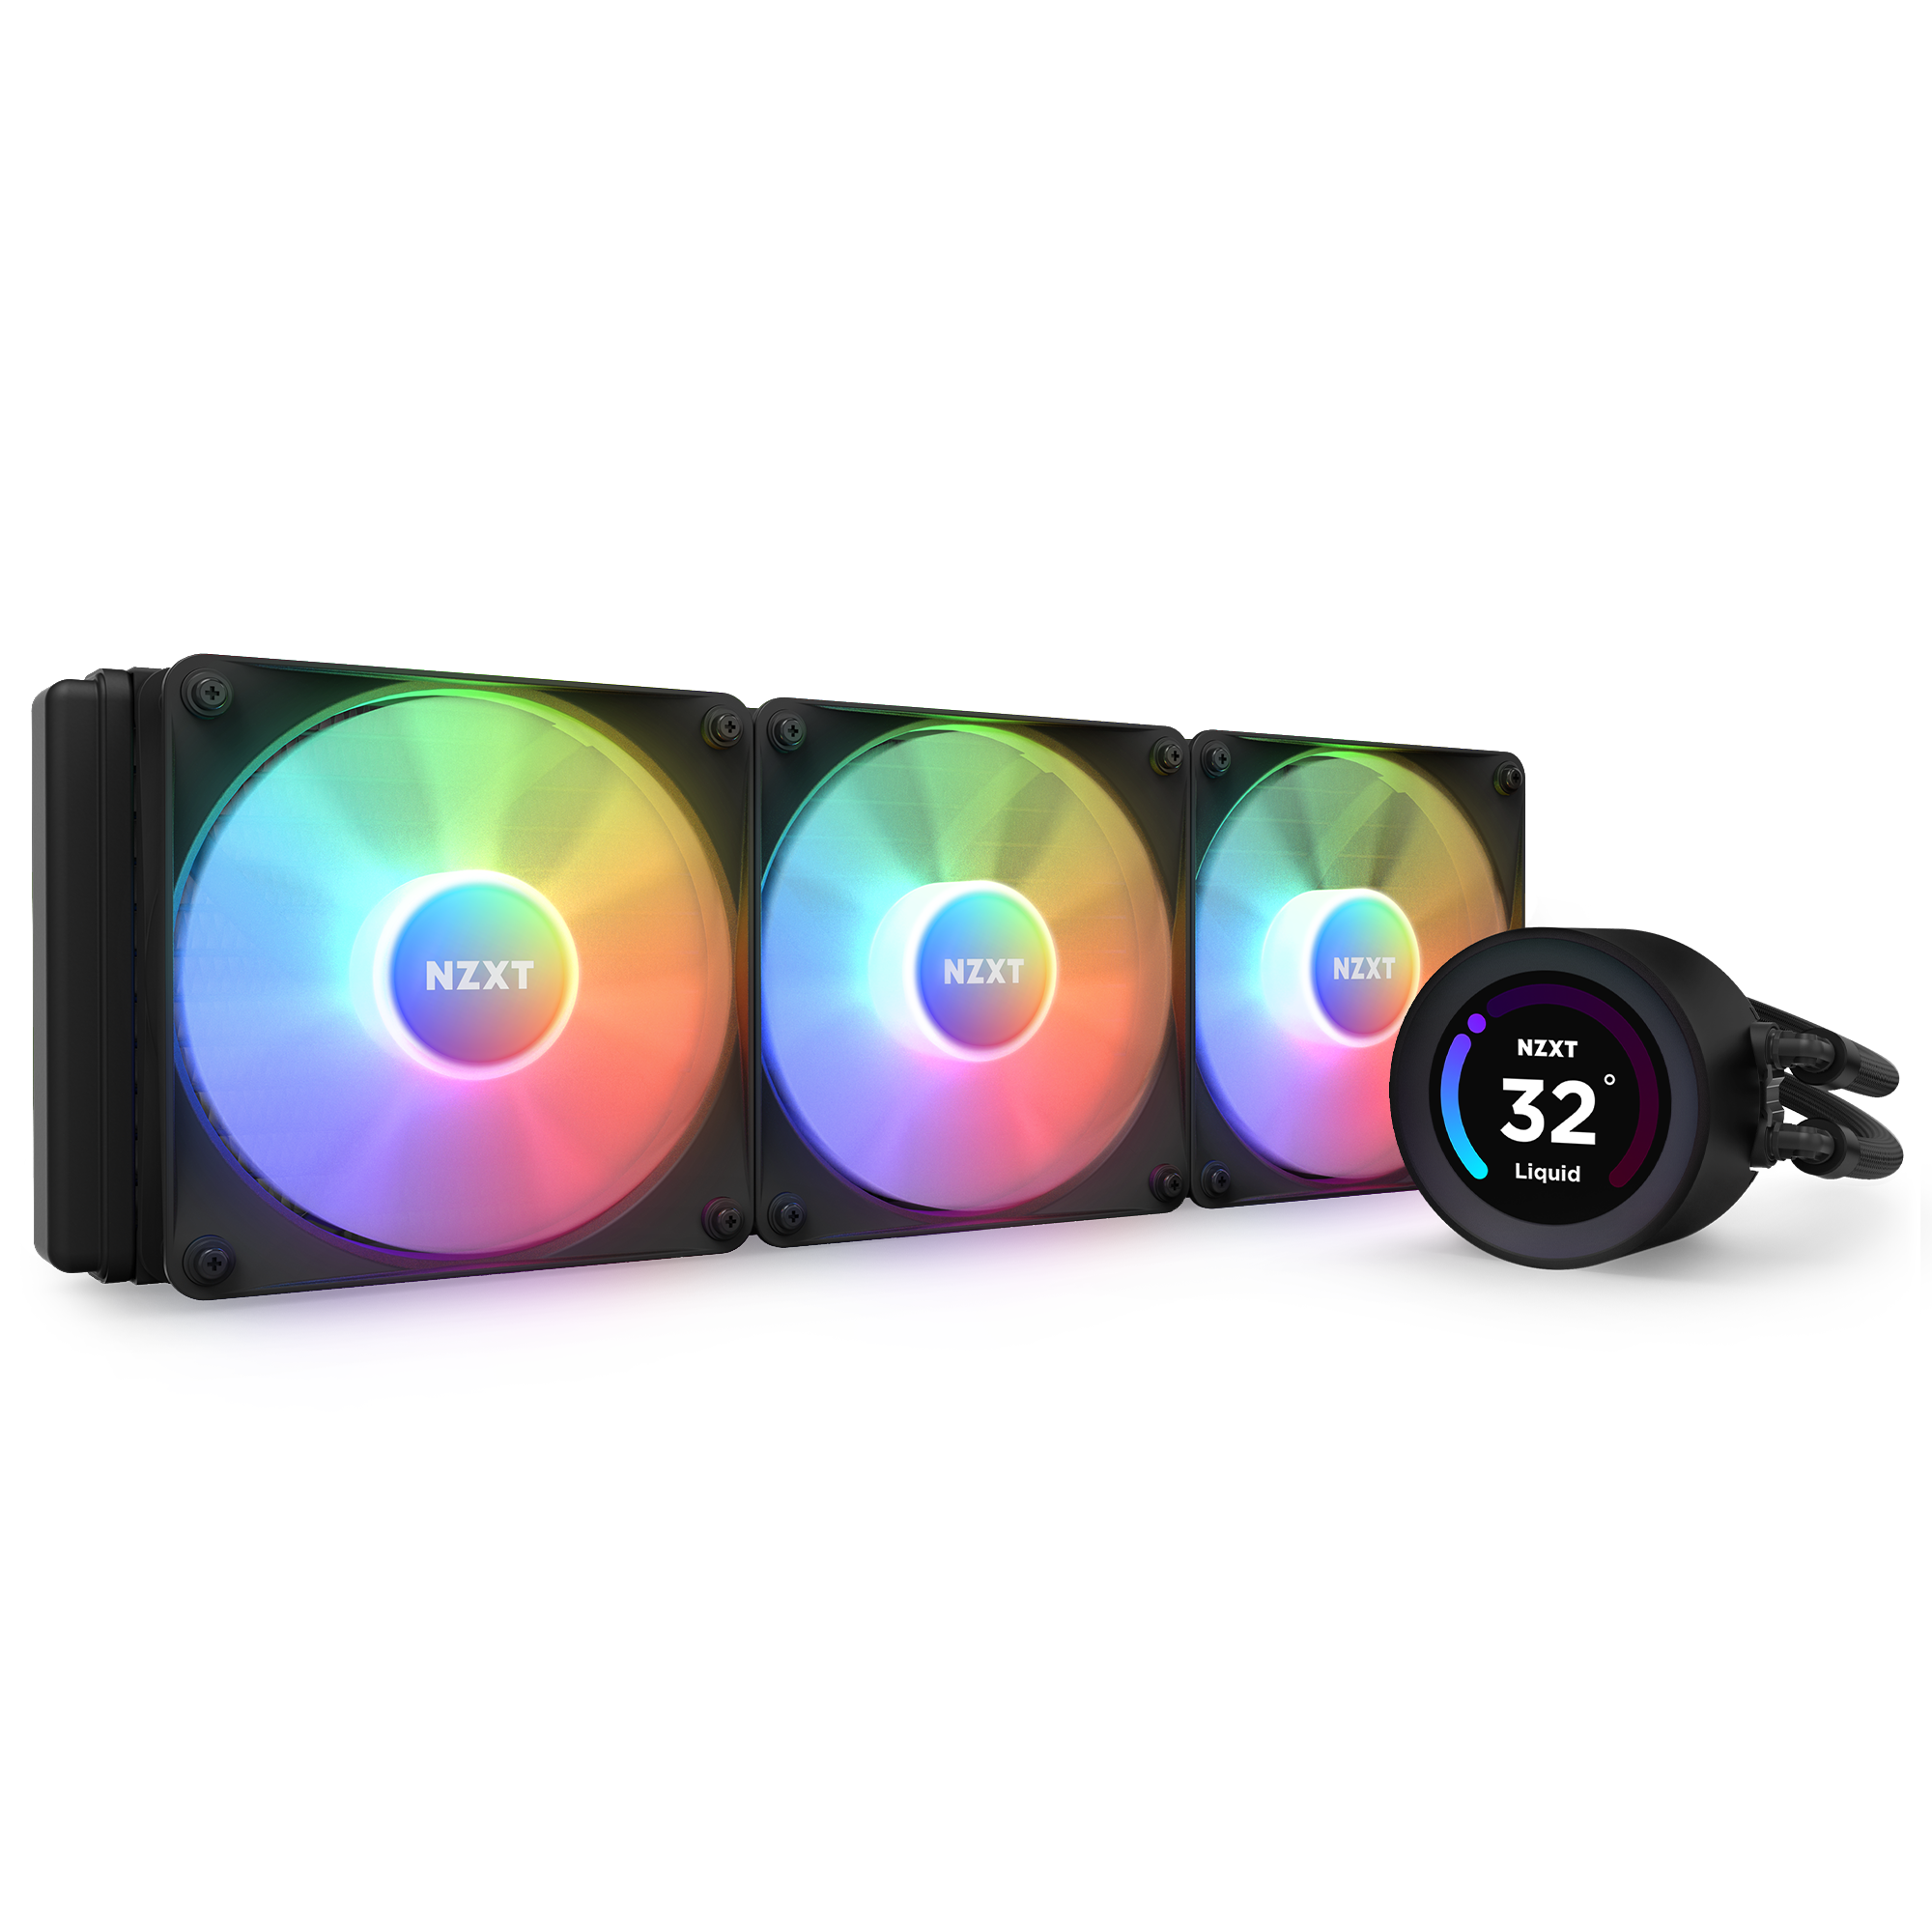 Kraken Elite 360 RGB | LCD CPU Coolers | Gaming PCs | NZXT